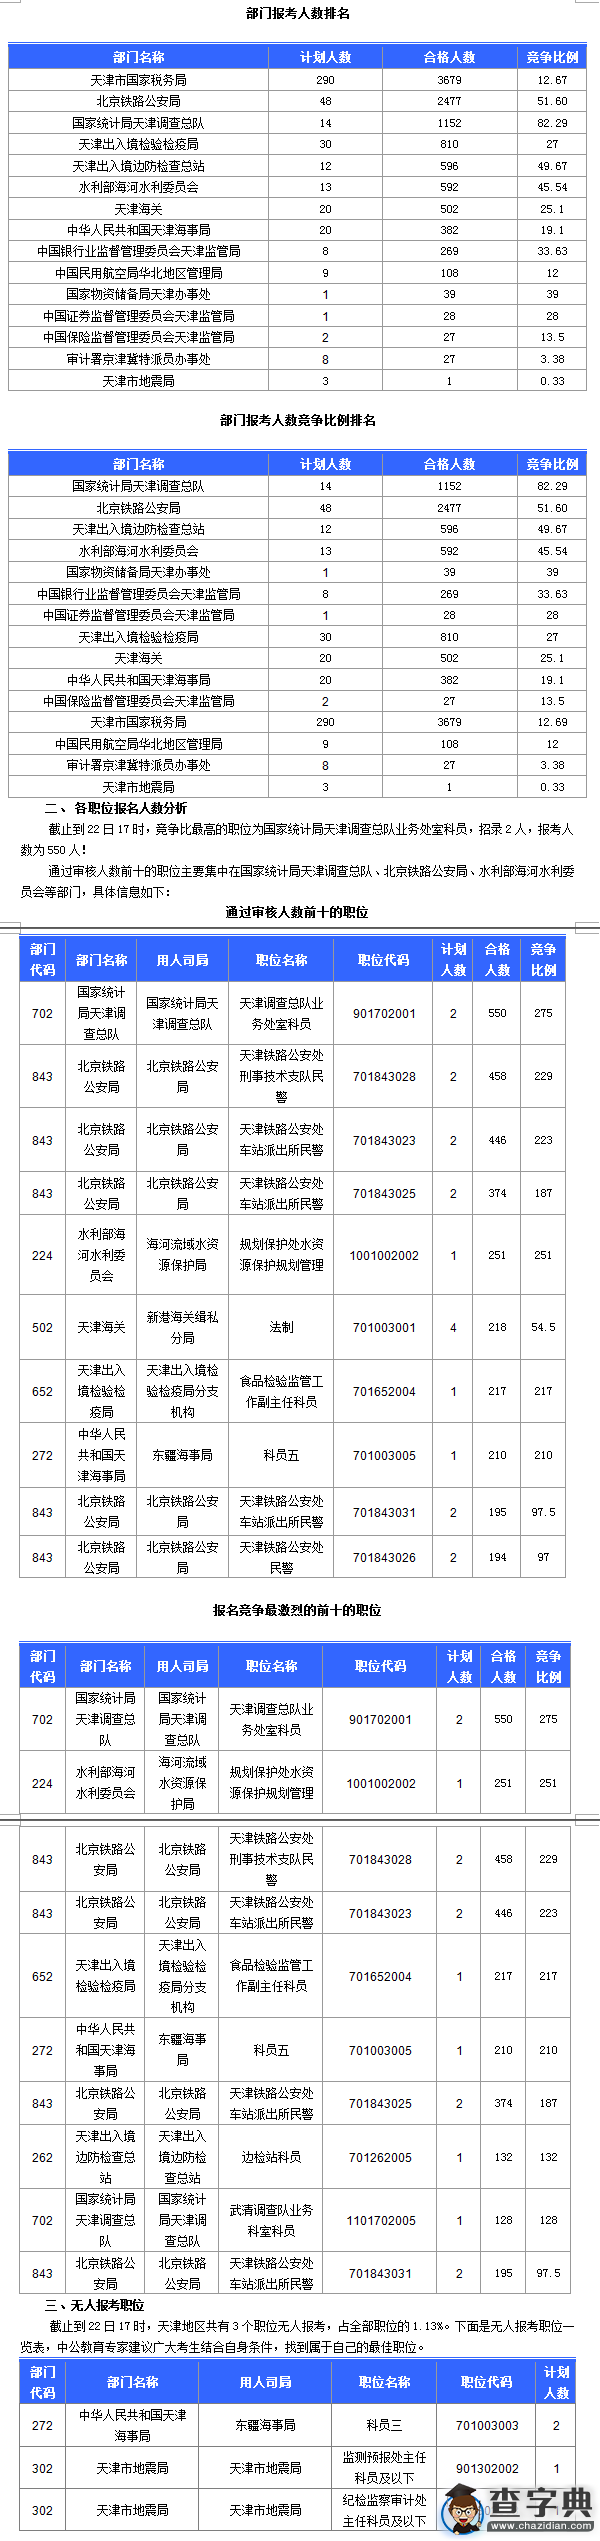 2016国考天津通过审核人数达10689人 最热职位275:11